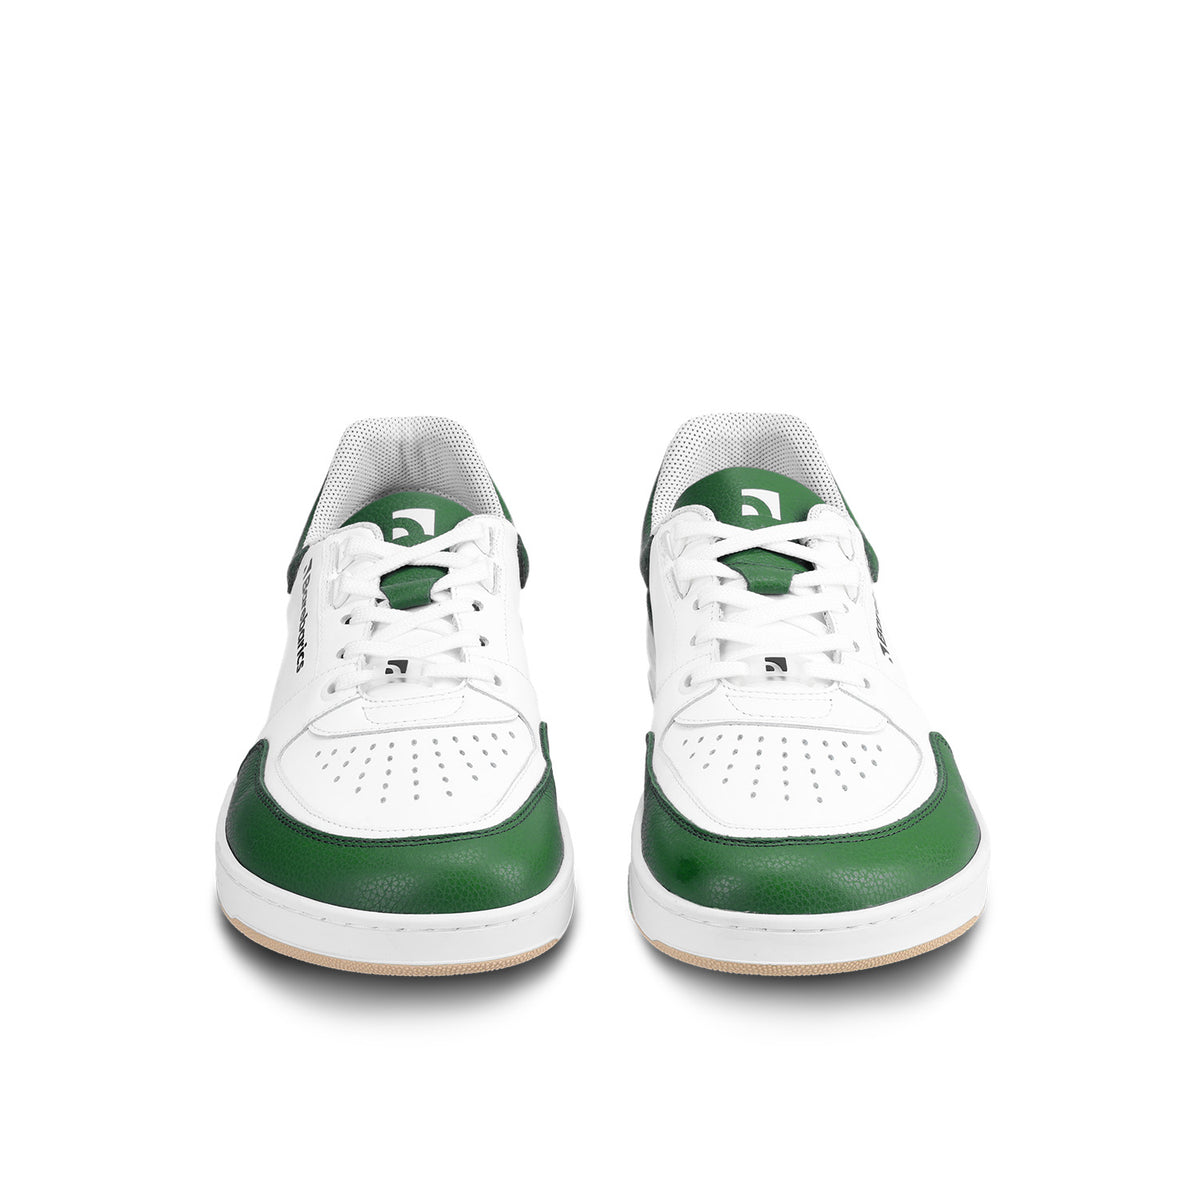 Barefoot Sneakers Barebarics Wave - White & Dark Green 4  - OzBarefoot